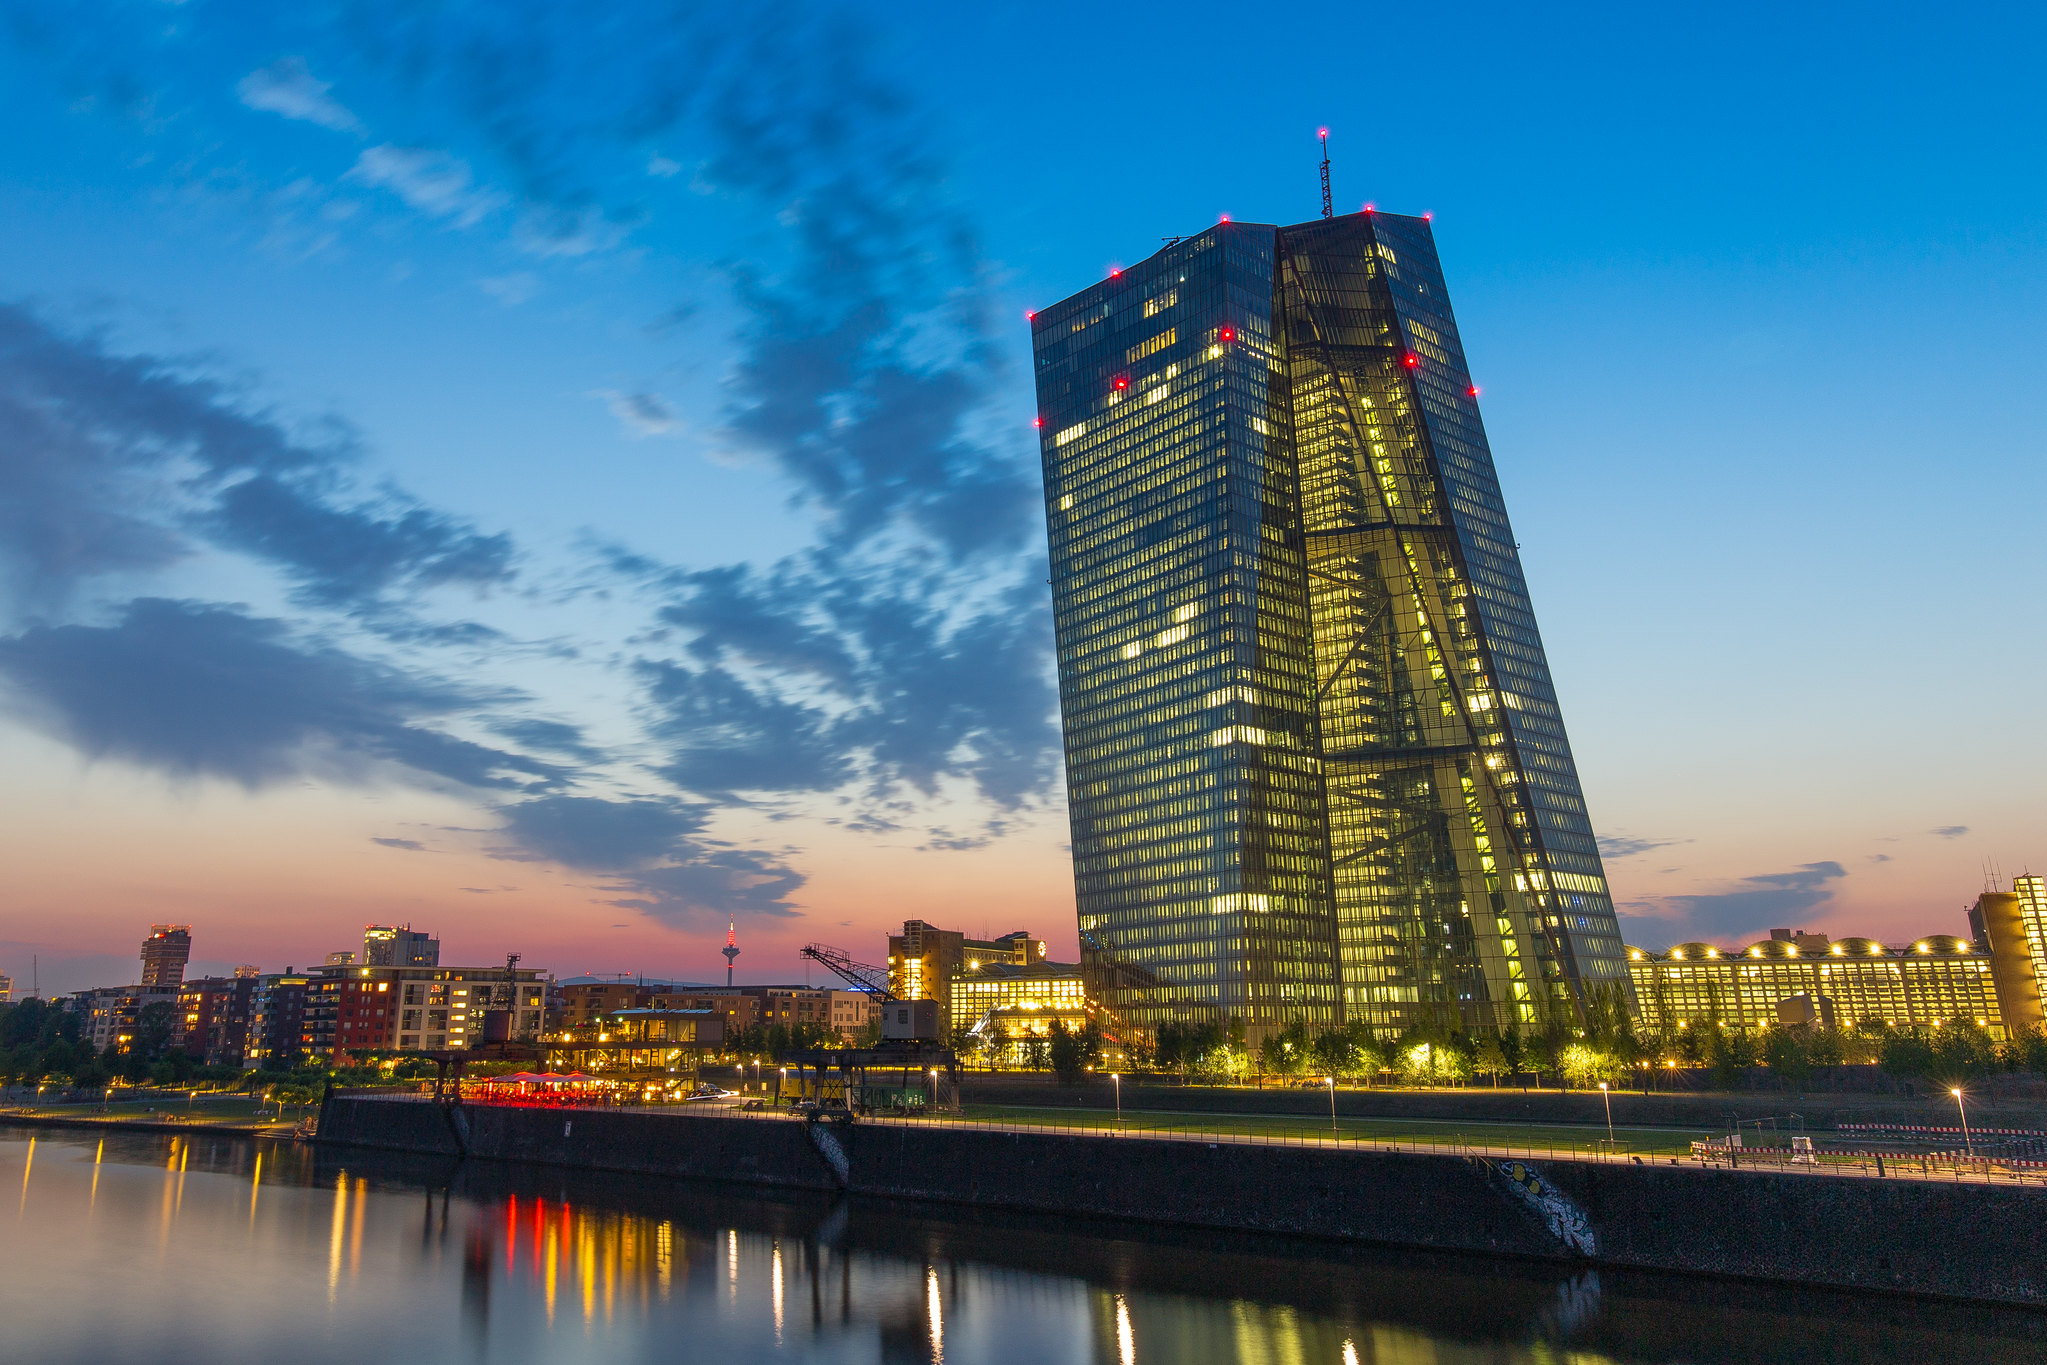 La Bce ha perso tempo, ma a luglio… Ecco cosa prevede Angeloni